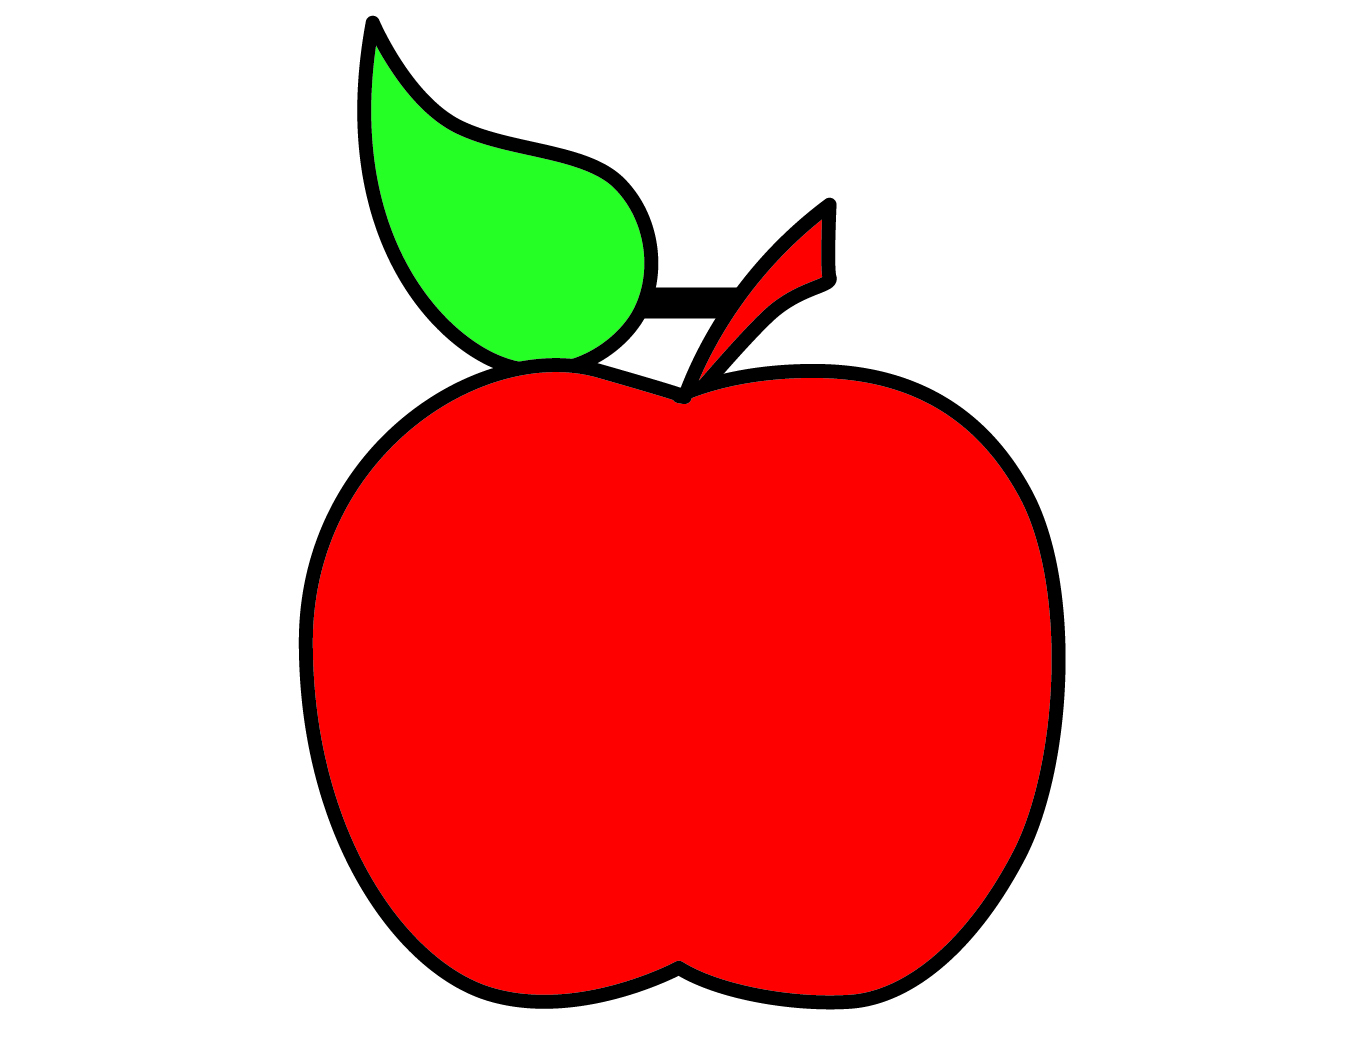 怎样画苹果简笔画图片